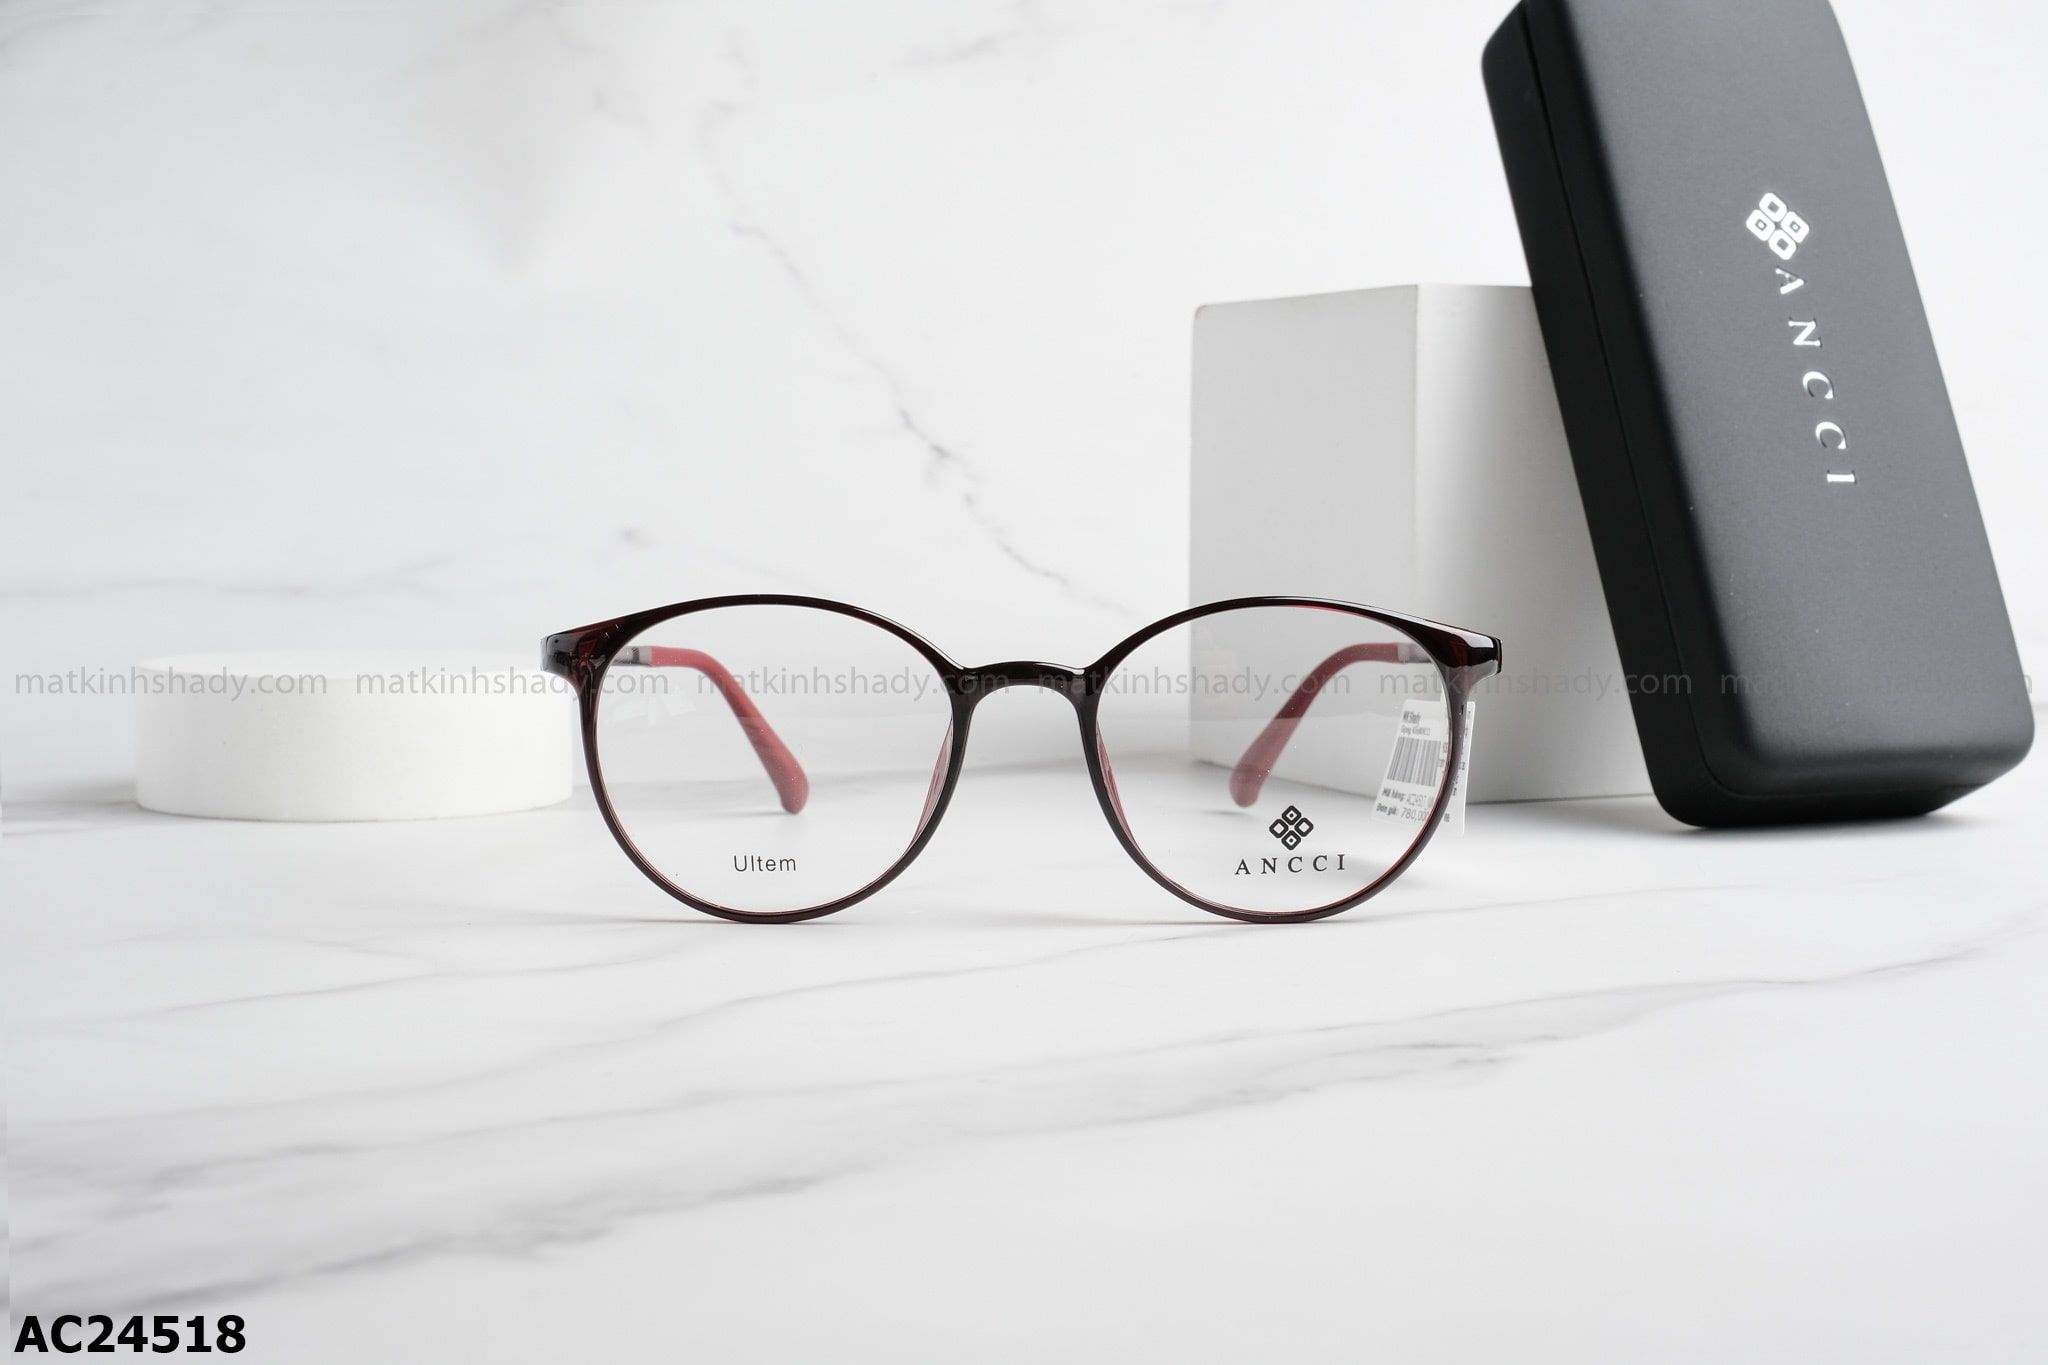  ANCCI Eyewear - Glasses - AC24518 